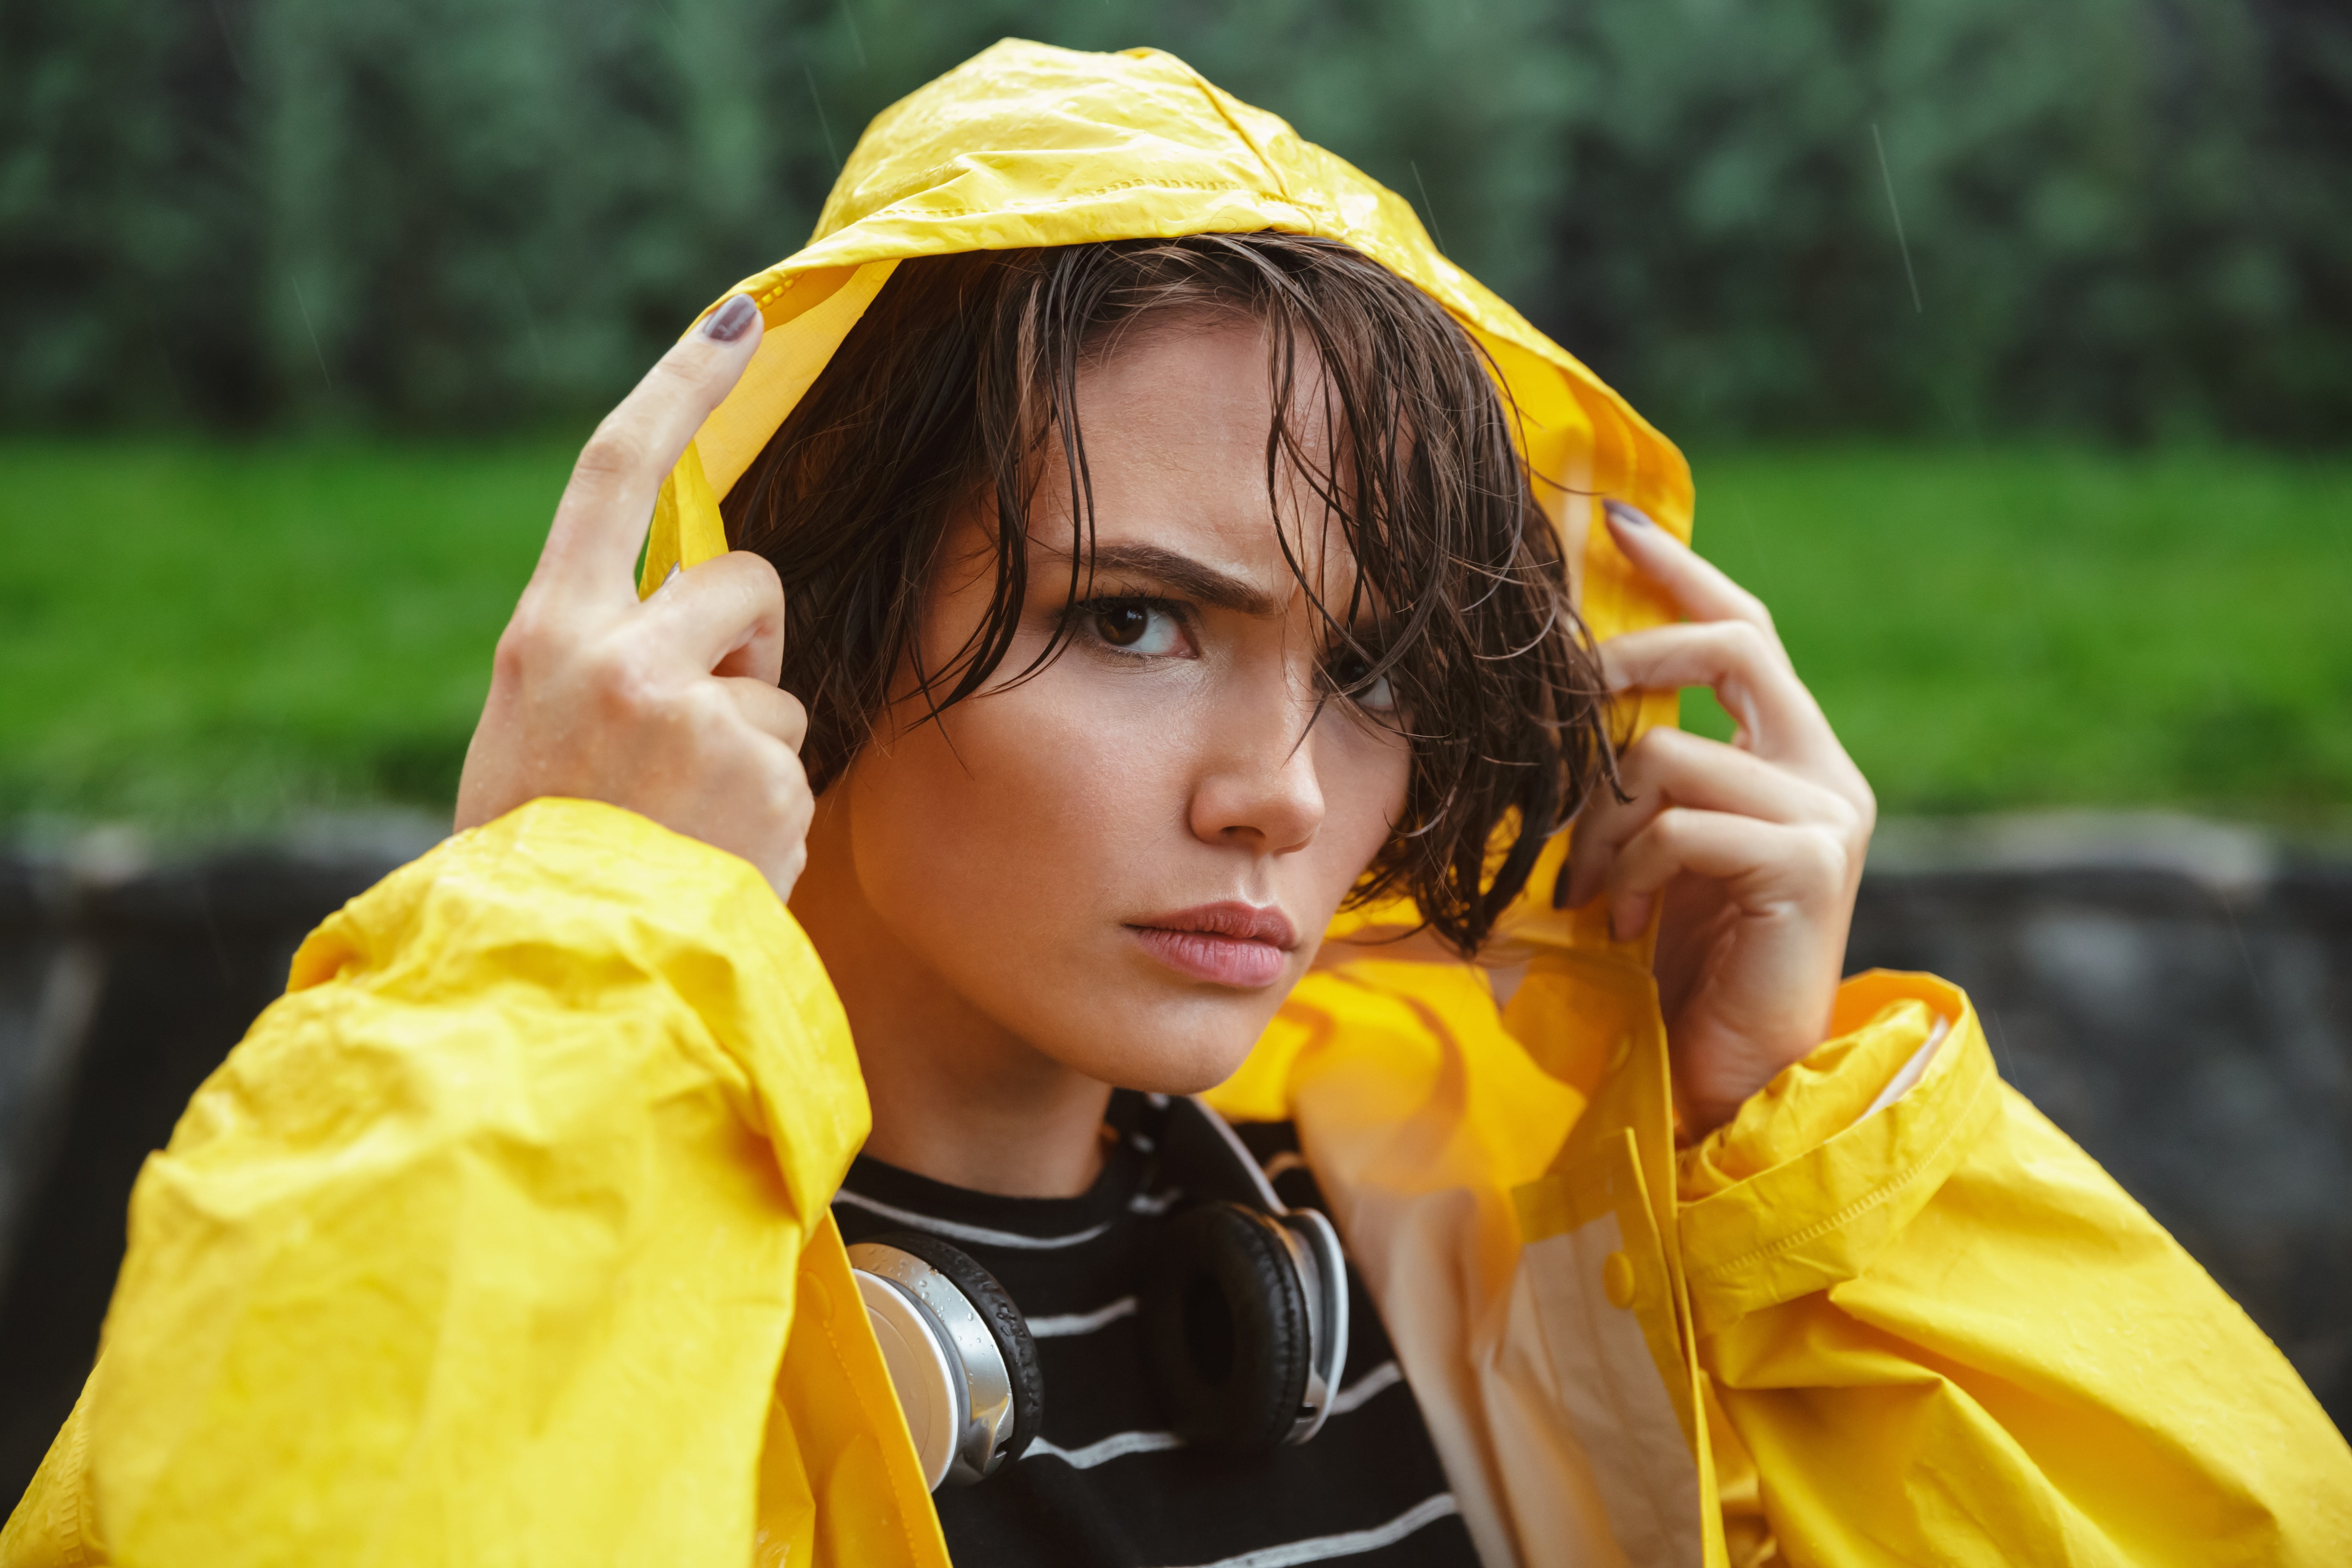 women, model, wet hair, portrait, upset, yellow, headphones